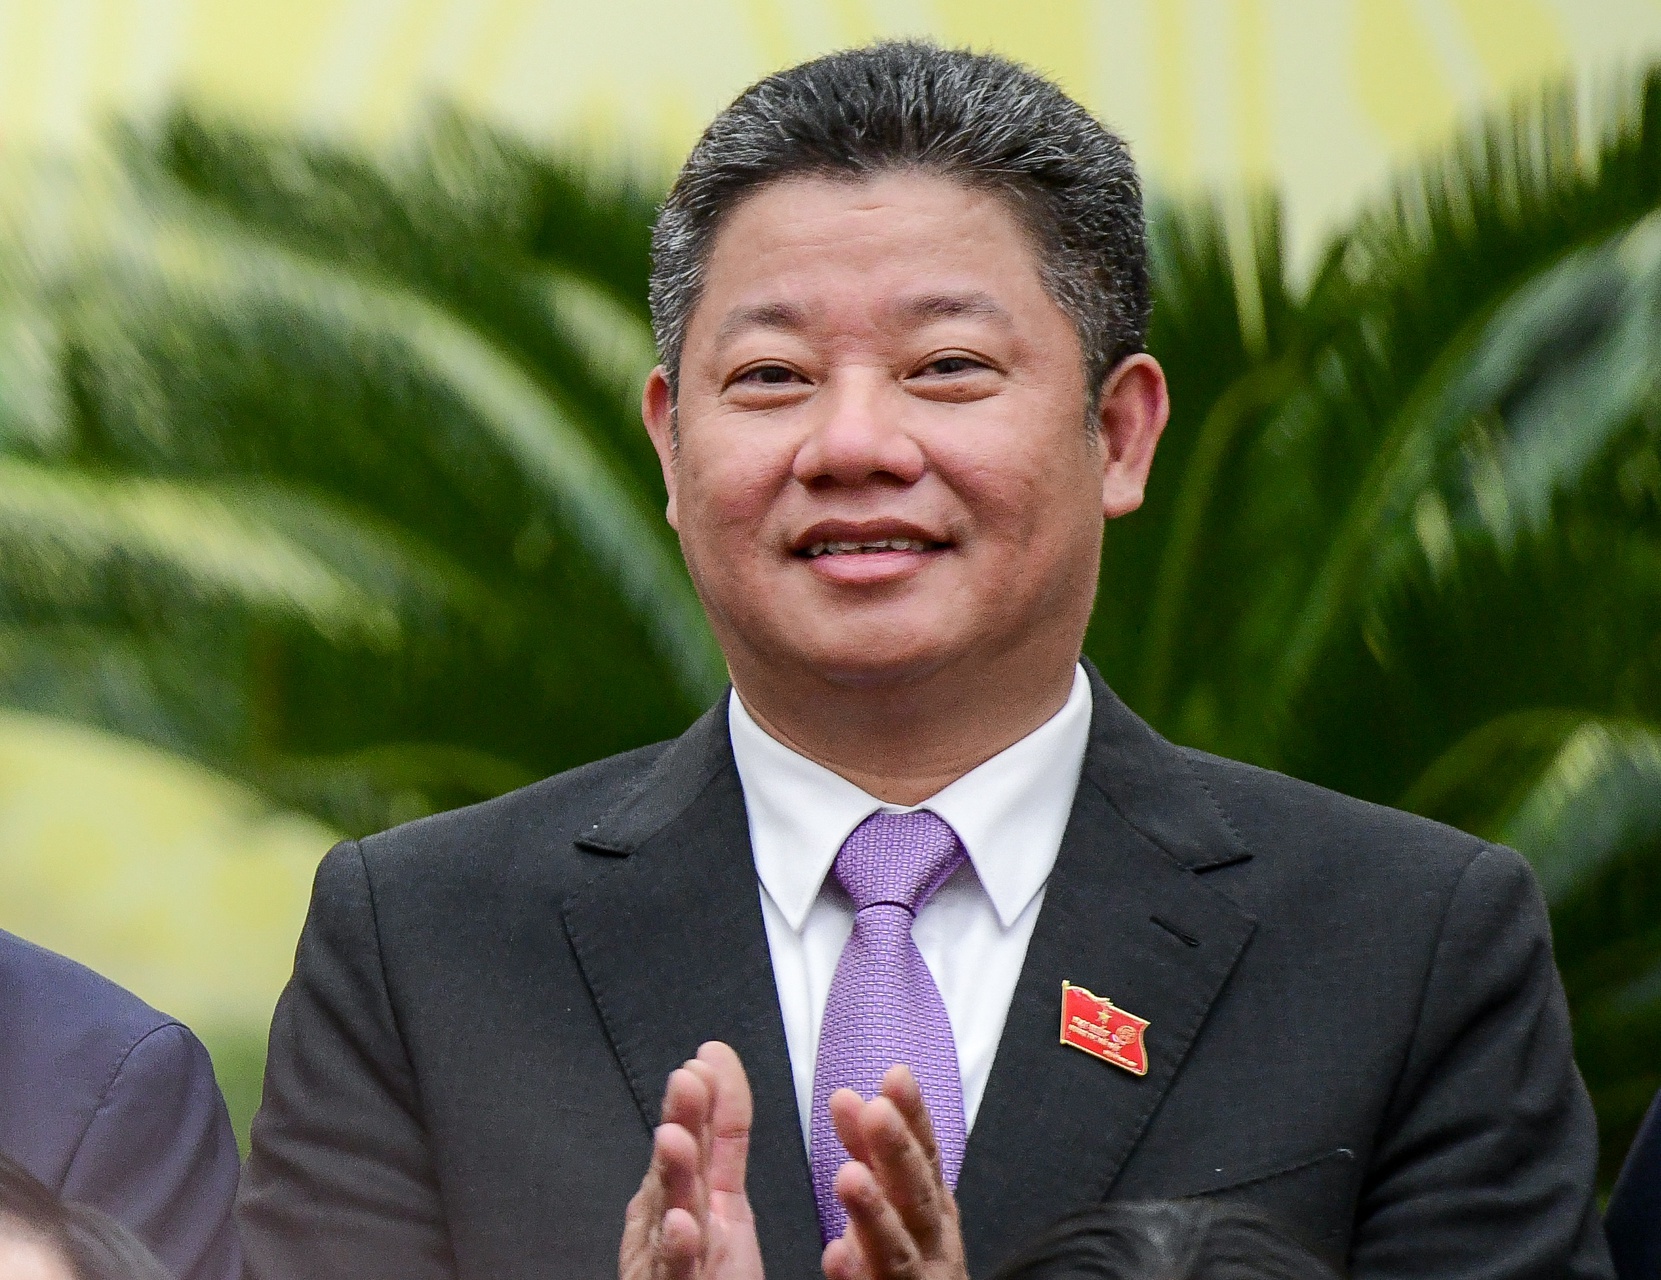 Đề nghị xử lý một phó chủ tịch Hà Nội liên quan đại án Nhật Cường - Ảnh 1.